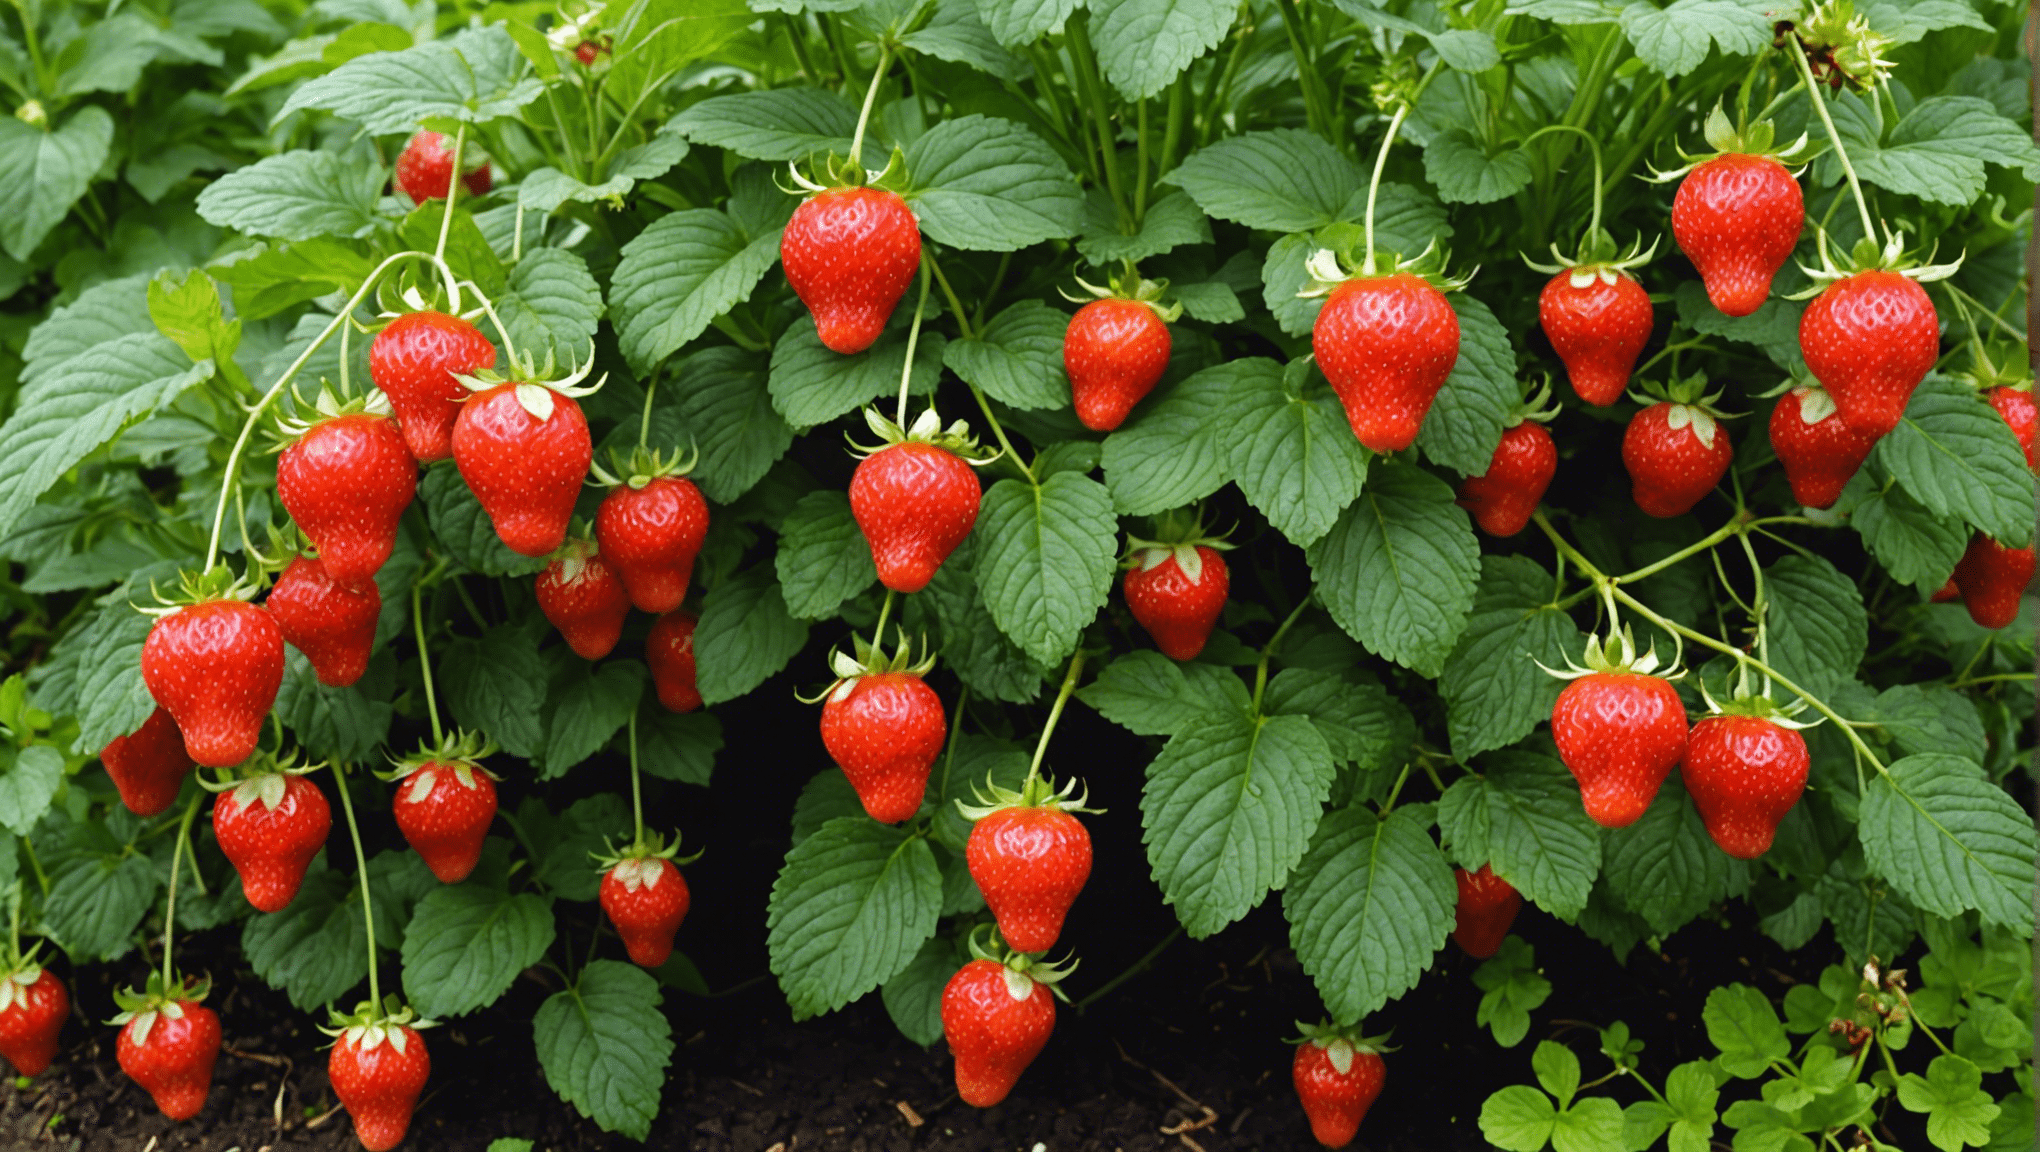 découvrez pourquoi les fraisiers sont essentiels pour créer un jardin luxuriant et productif. apprenez comment cultiver ces délicieux fruits et profiter d'une récolte abondante. des conseils pratiques pour réussir la culture des fraisiers dans votre jardin.